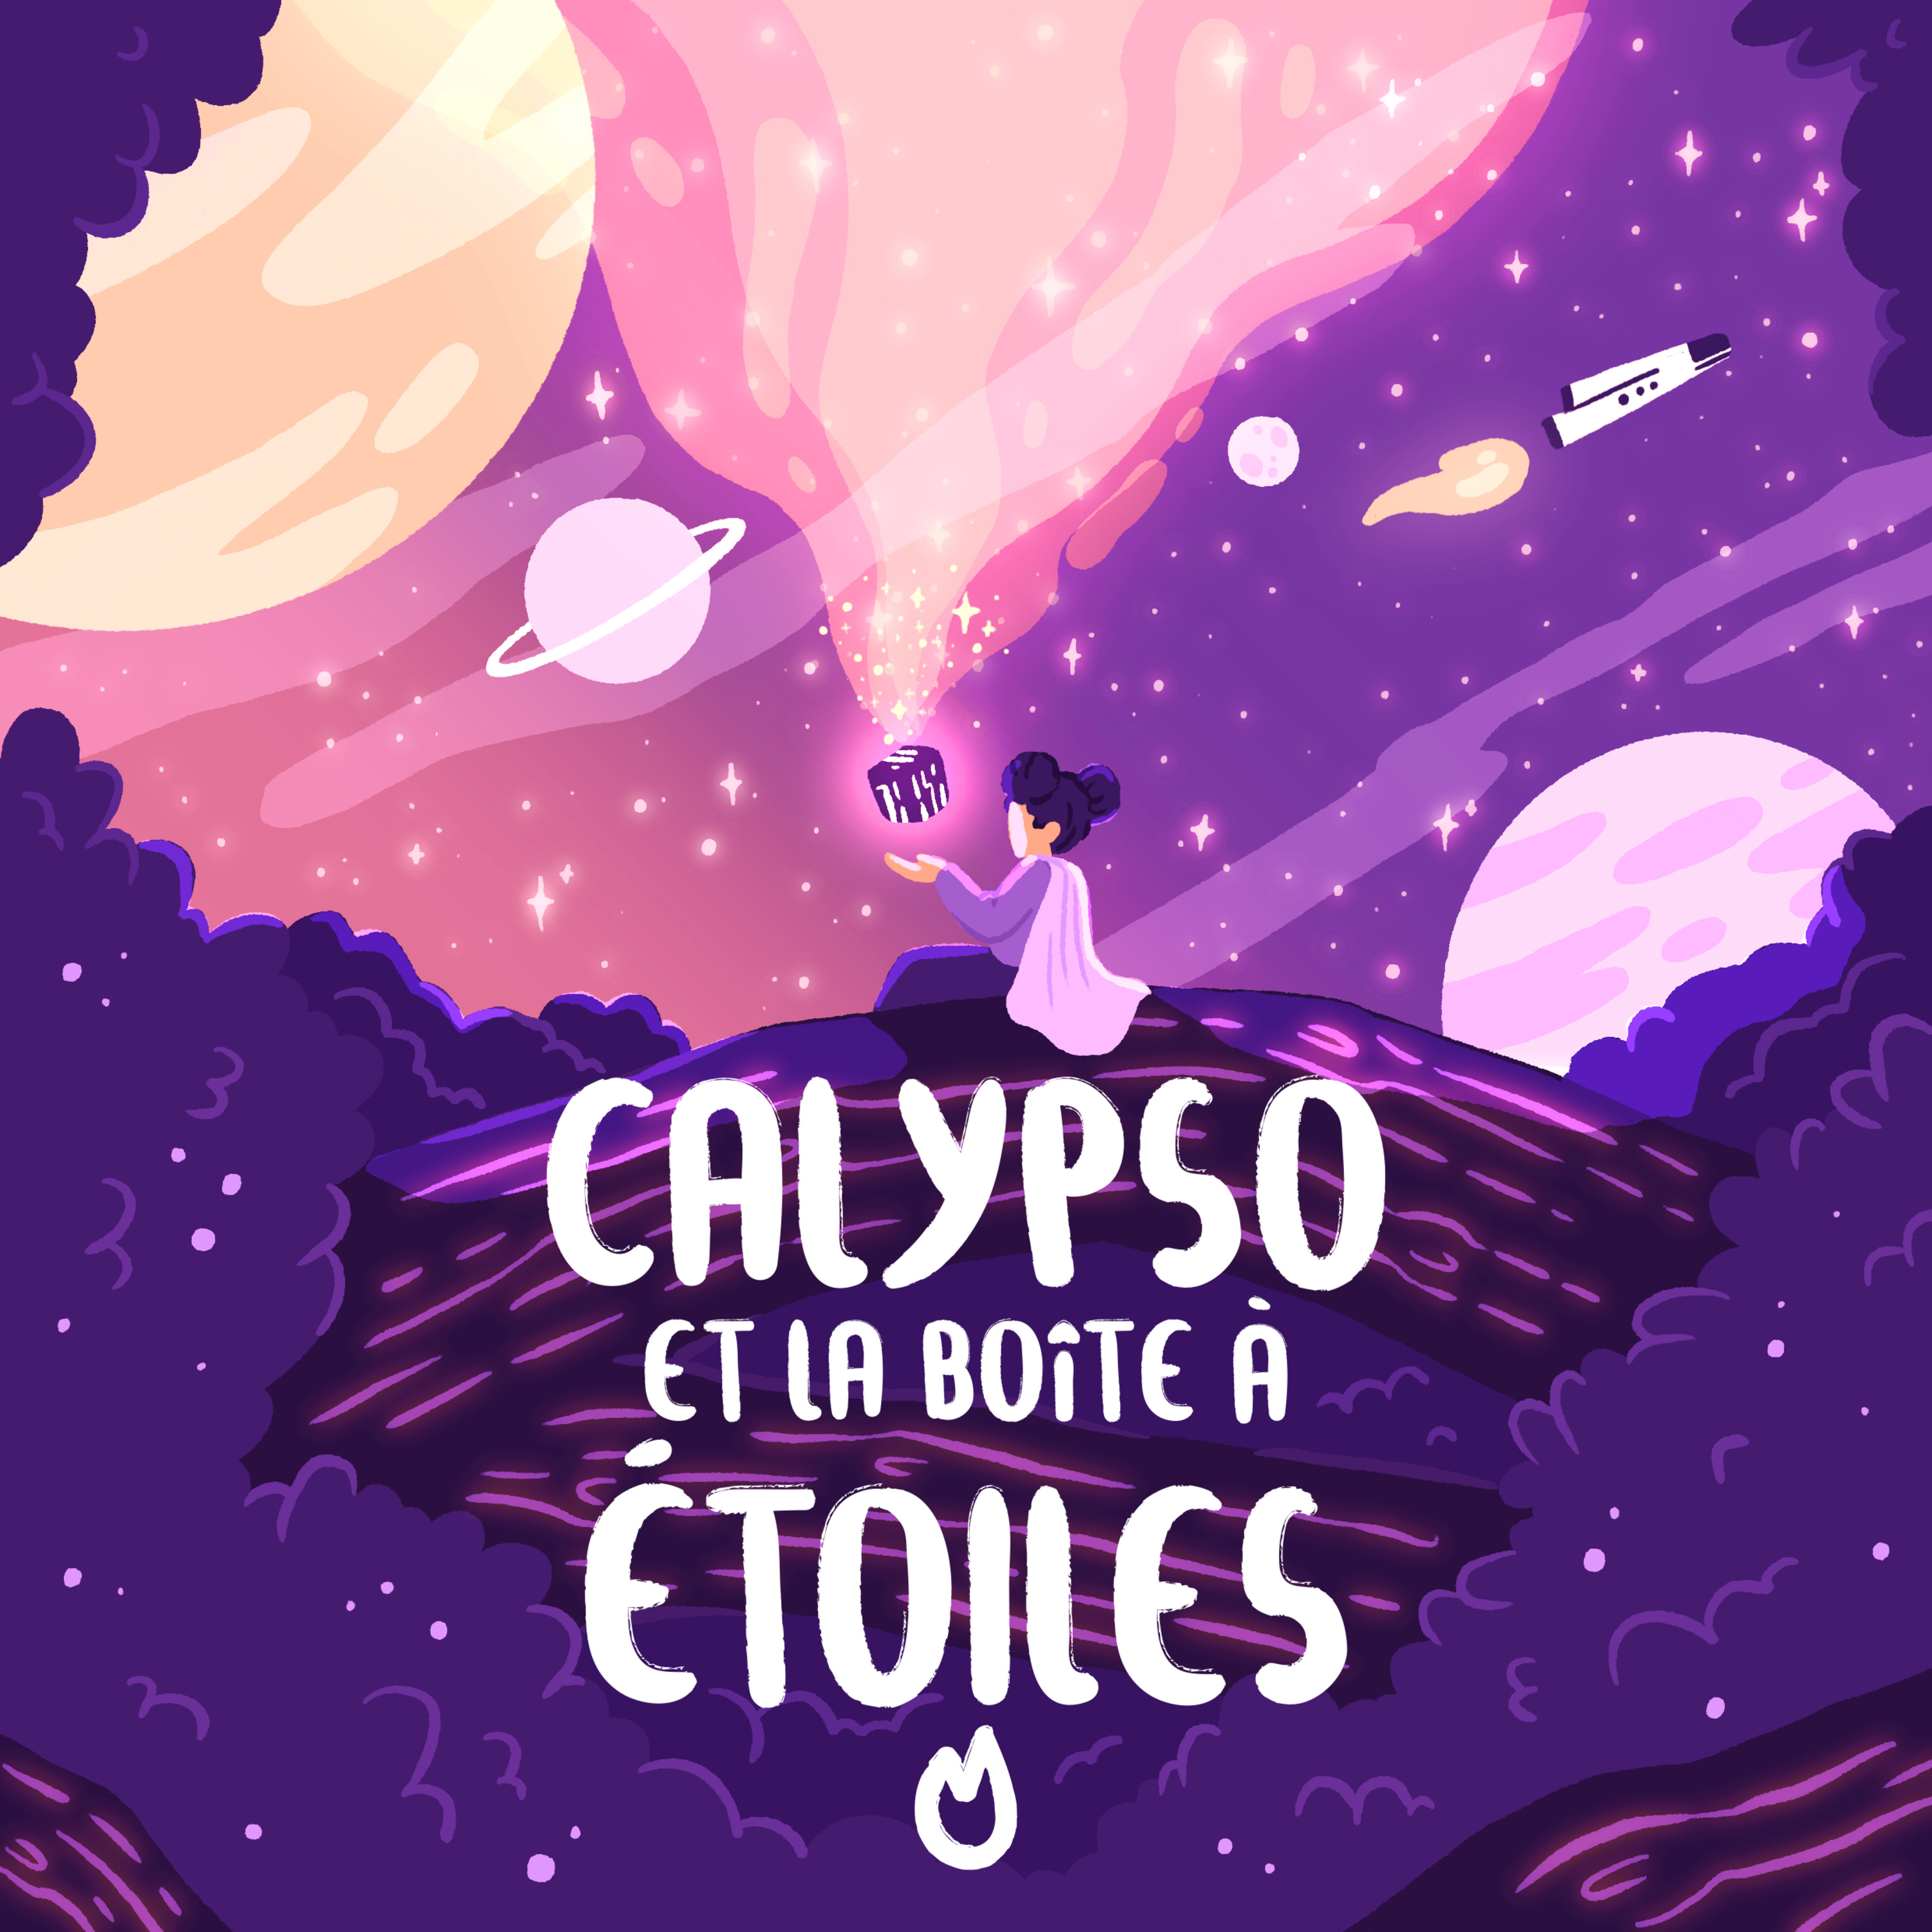 Episode 5 - Calypso et la boîte à étoiles - Pozar